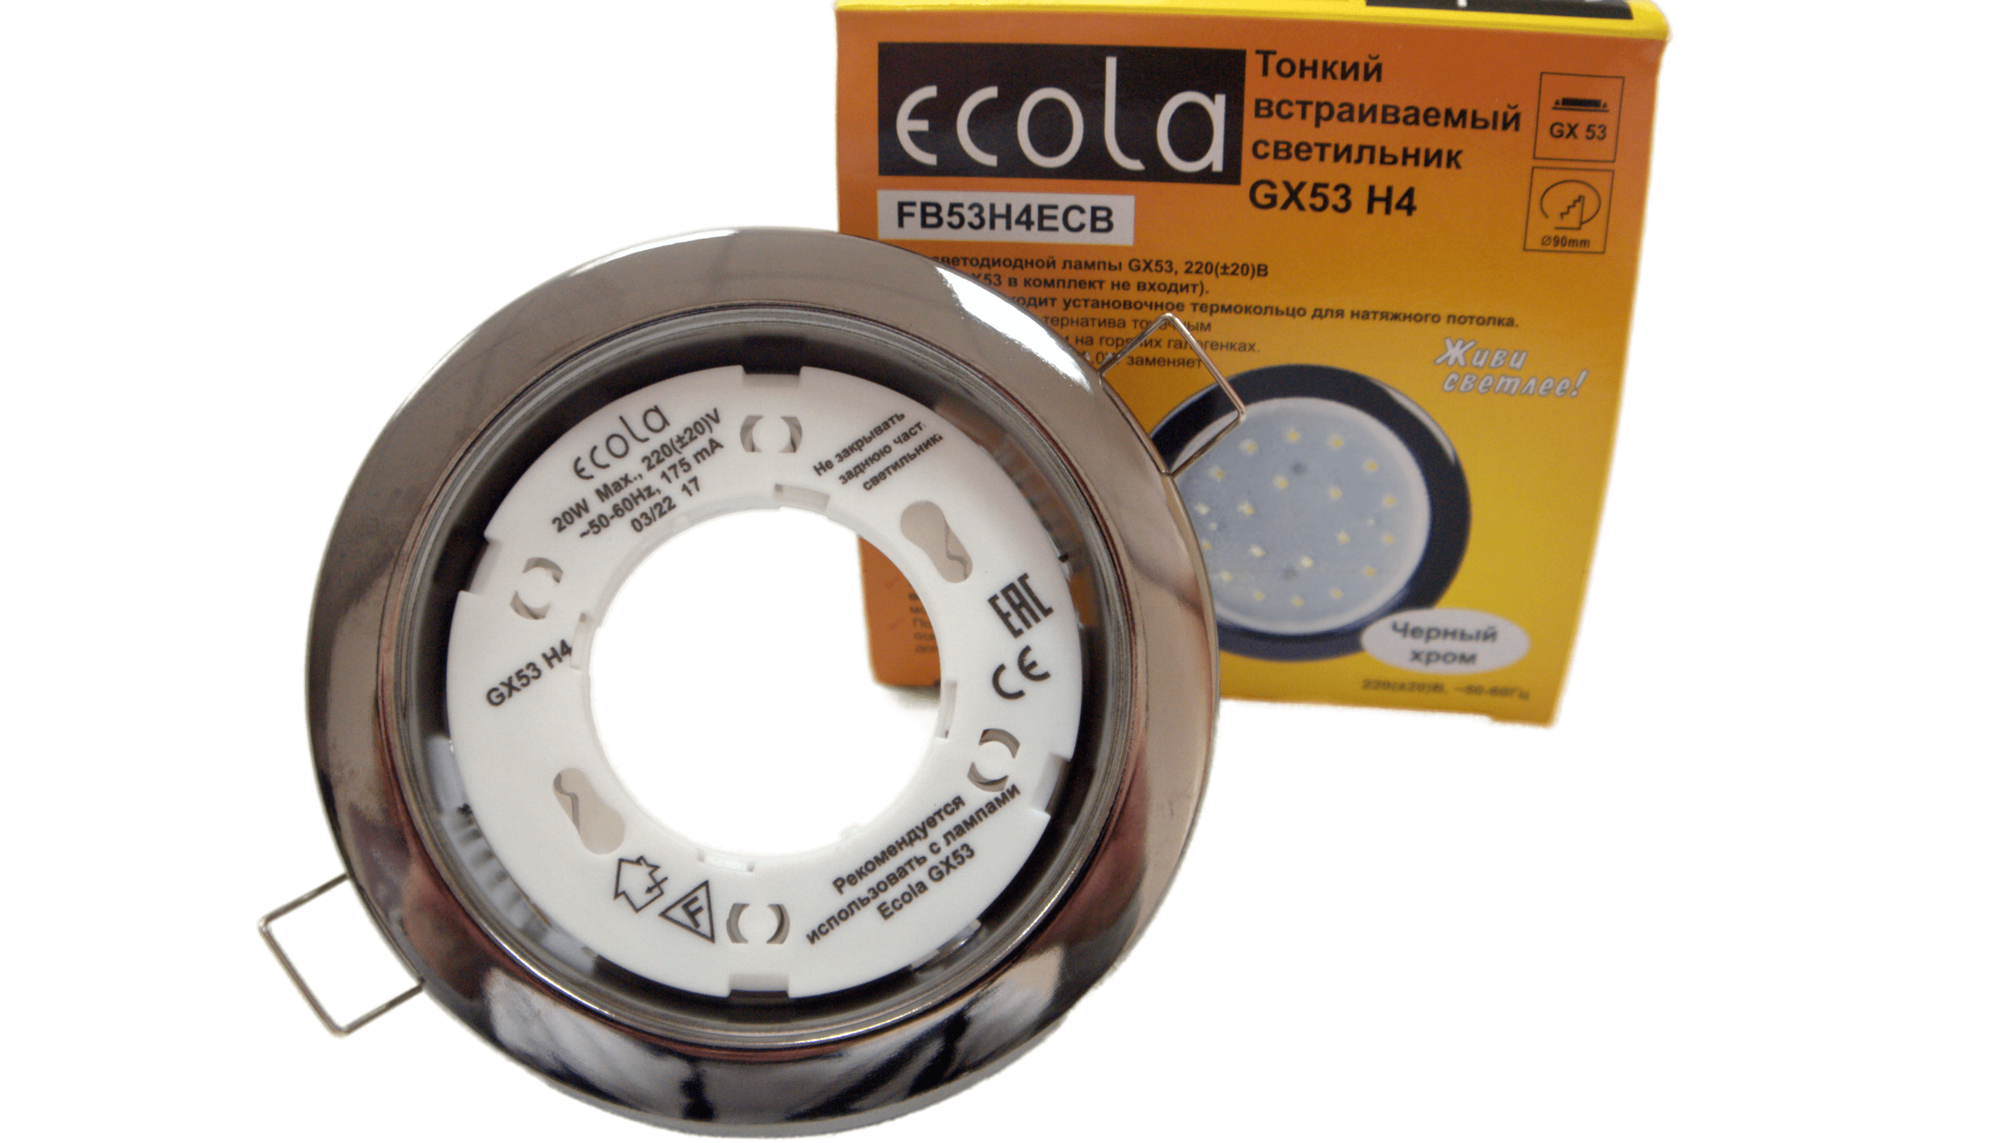 Светильник Ecola GX53 H4 черный хром для натяжного потолка с термокольцом